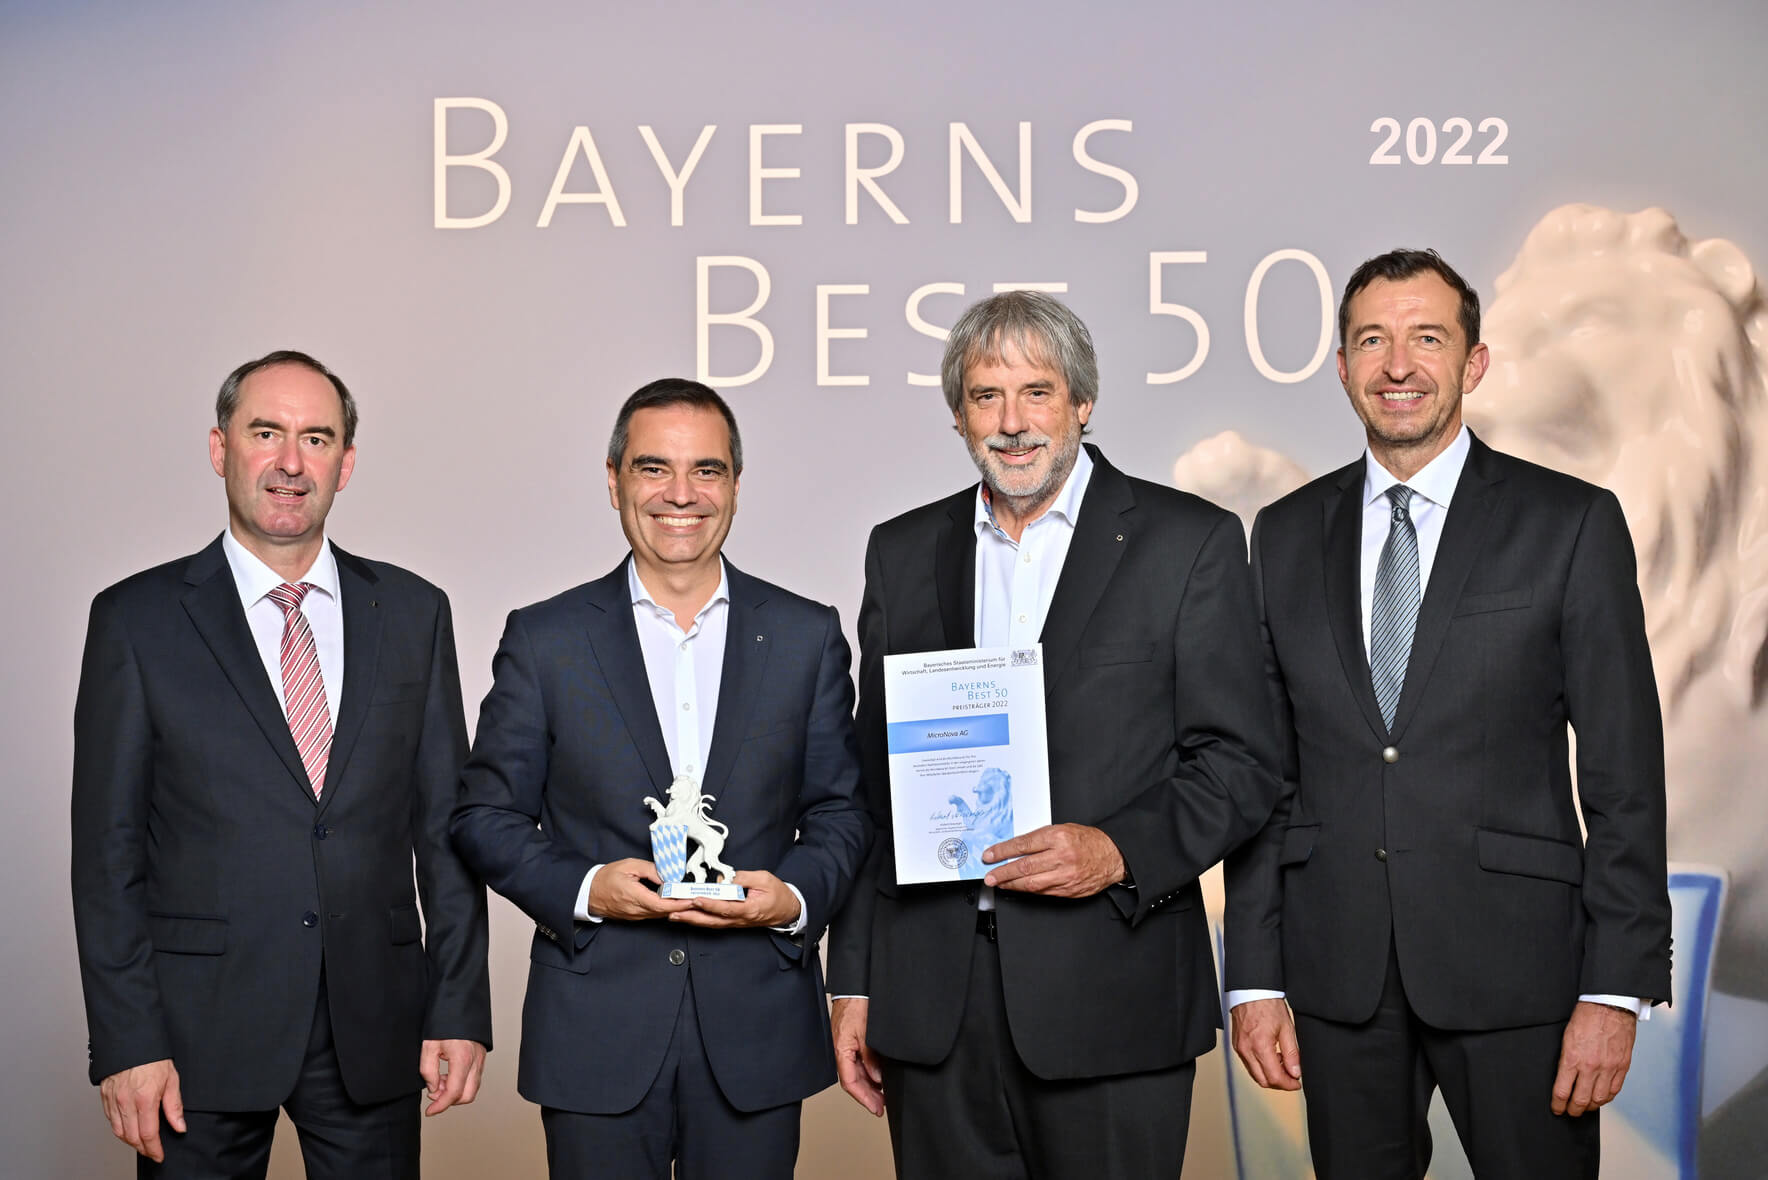 MicroNova named one of “Bavaria's Best 50”